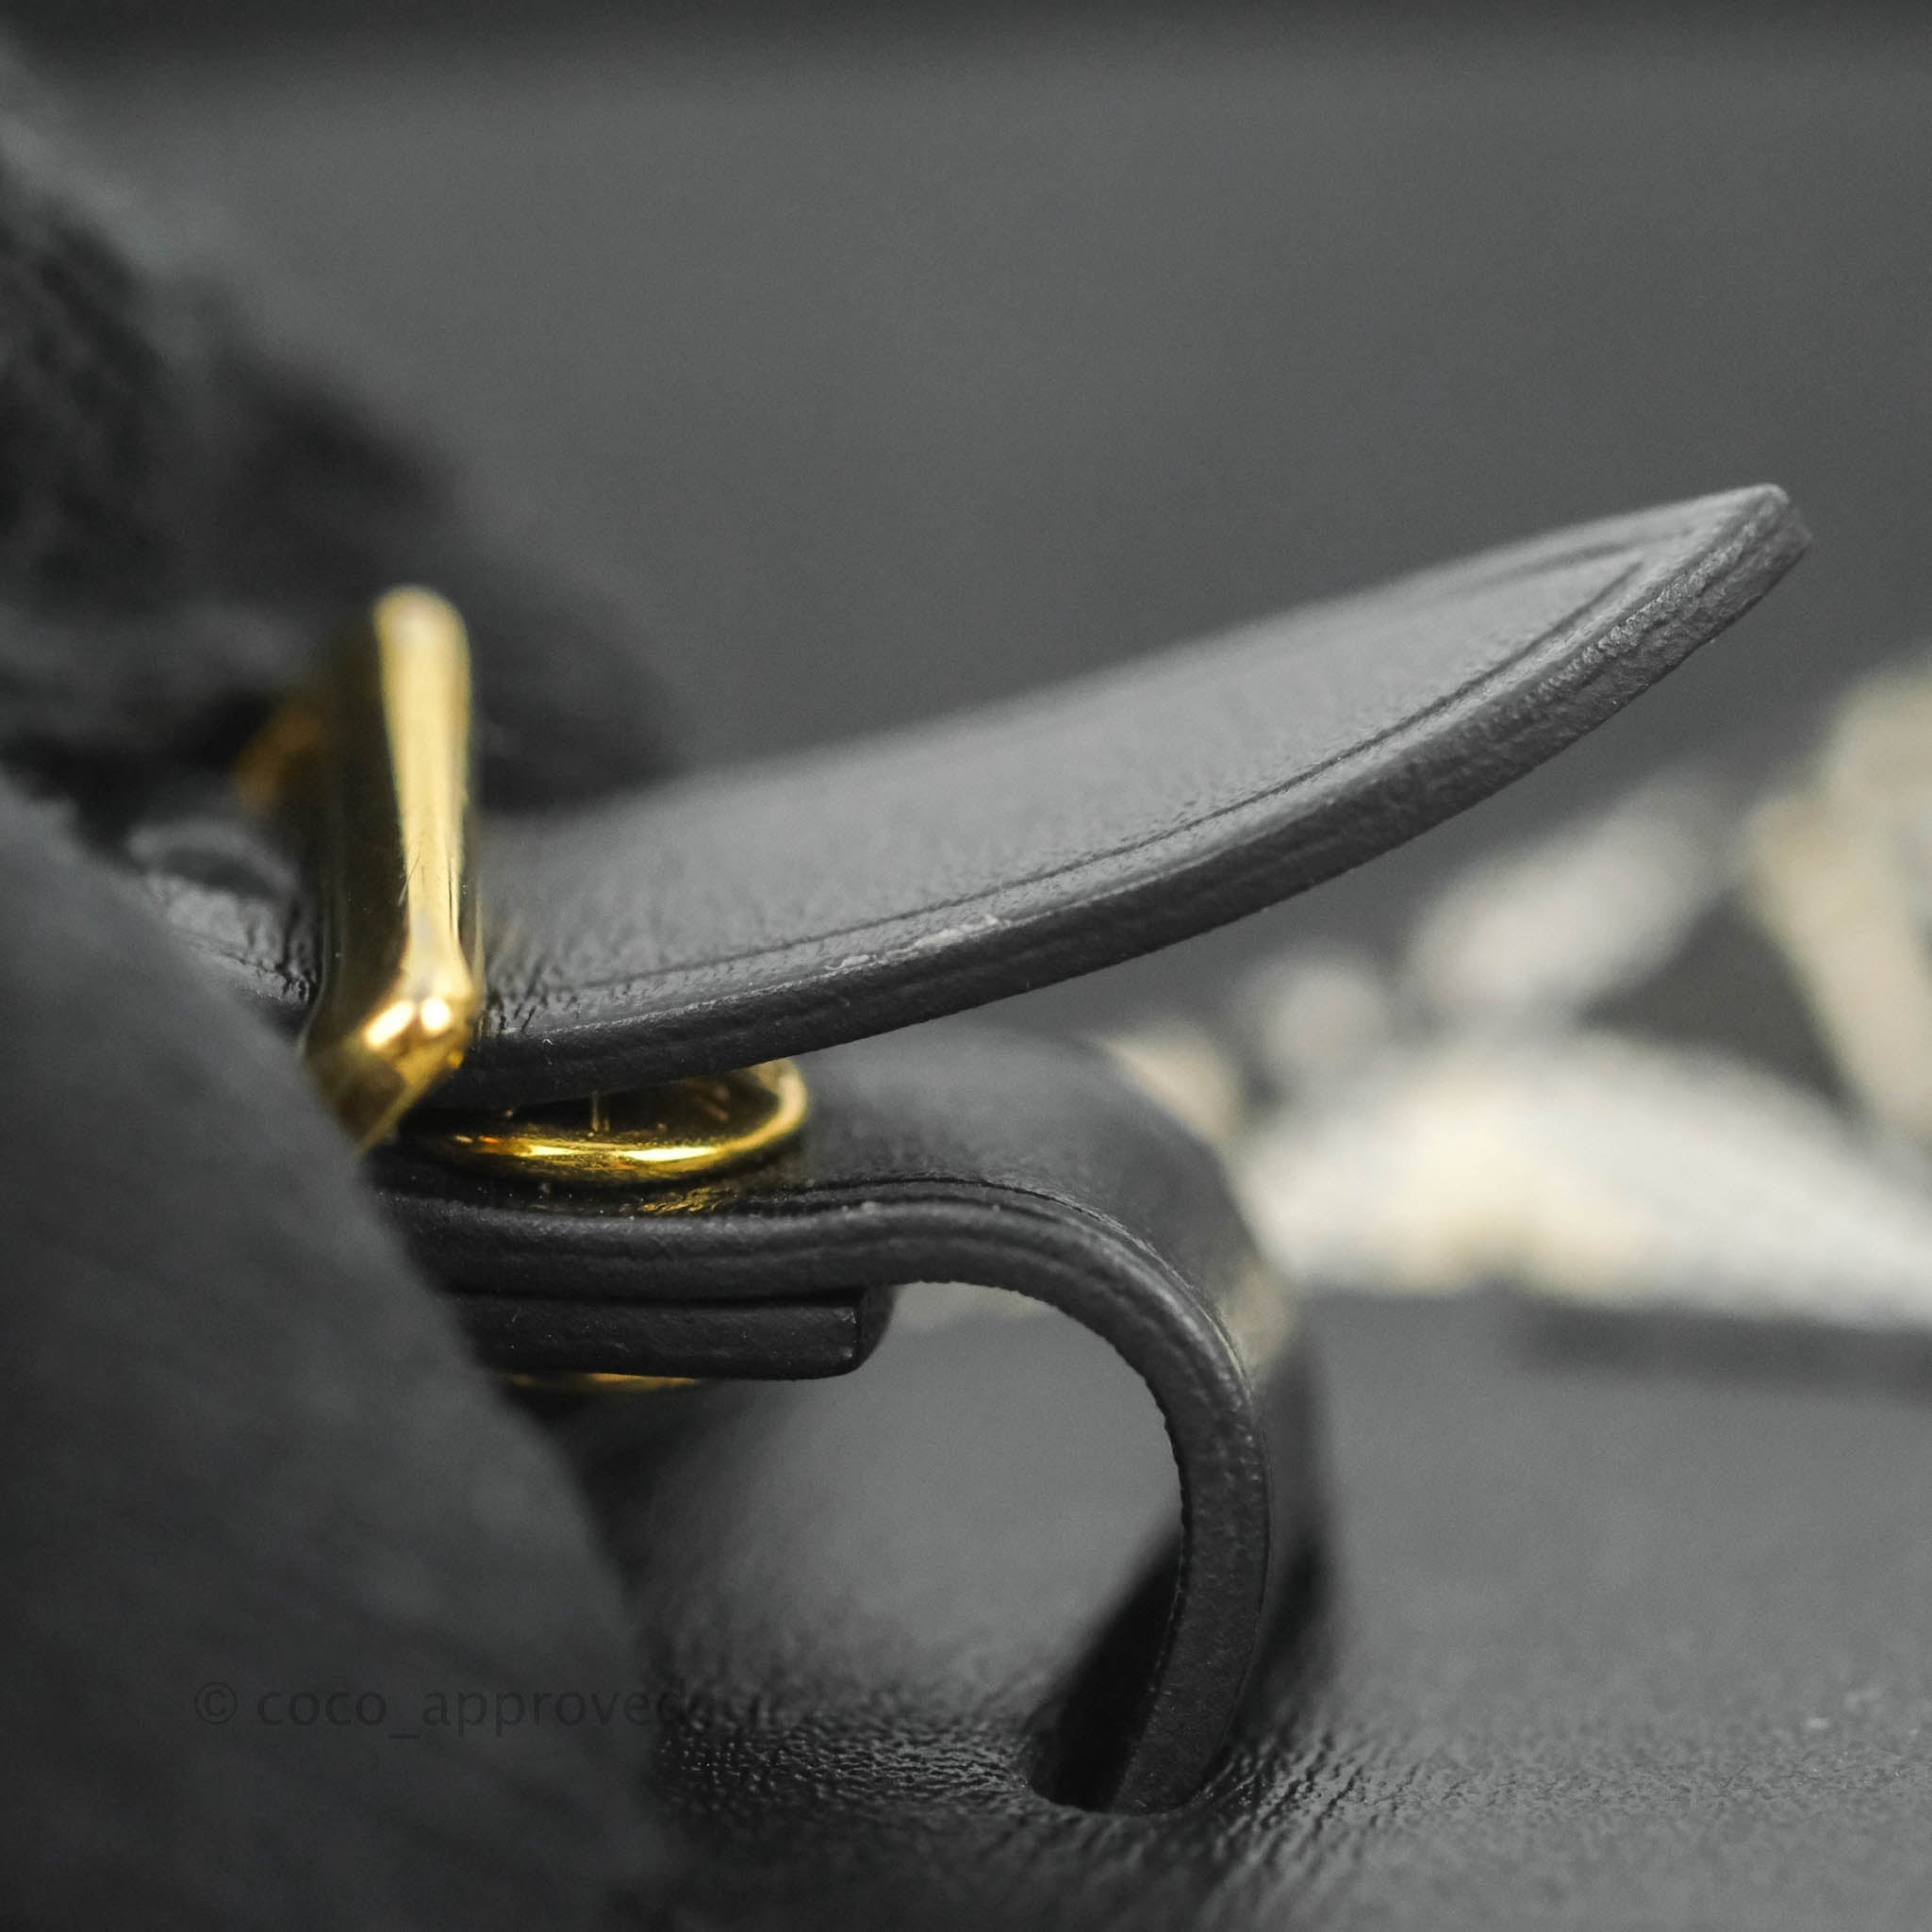 Louis Vuitton Deauville Mini SINCE1854 Nicolas Ghesquière M57205 x Monogram  Jacquard Black PL3270 Women's Shoulder Bag